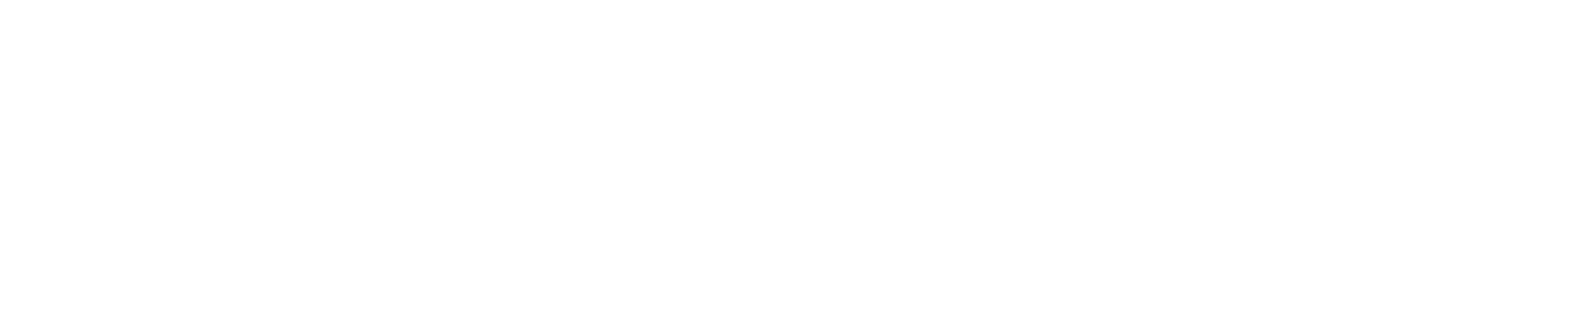 Everest Group logo large for dark backgrounds (transparent PNG)